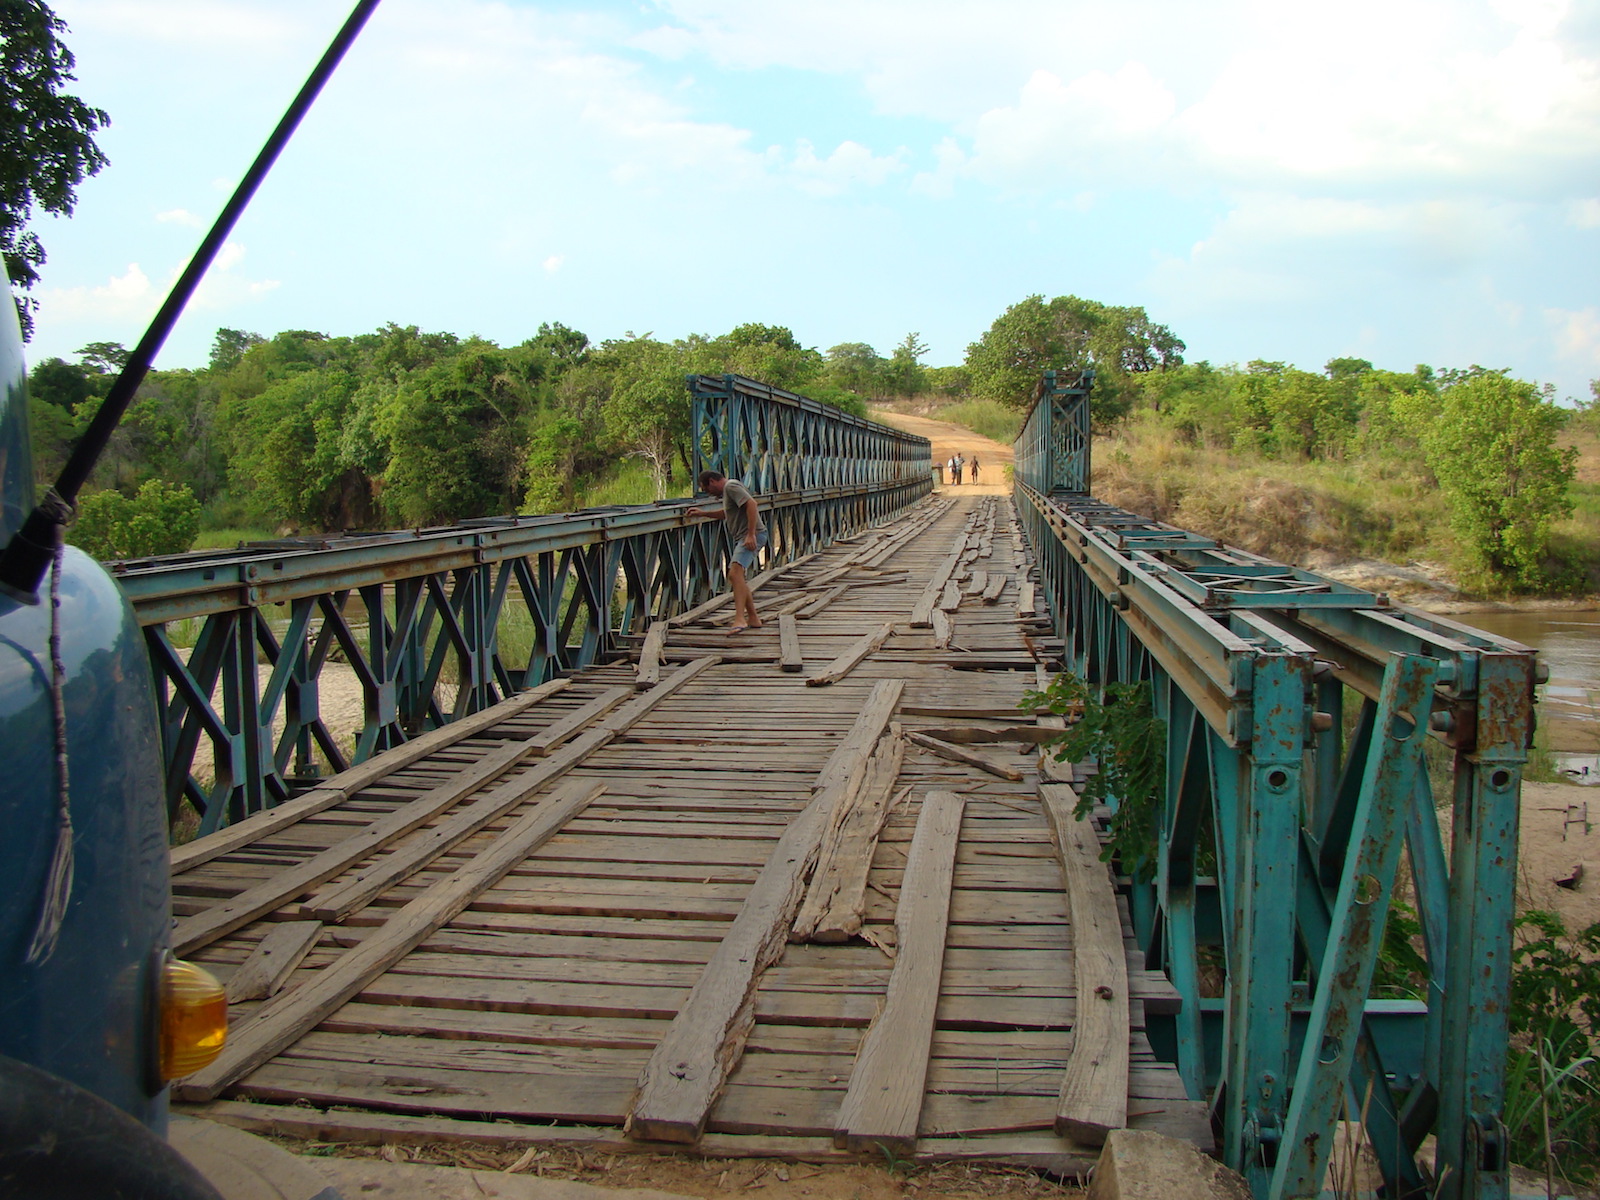 August der Reisewagen: Fahren wir oder nicht? Eine Brücke in Tansania